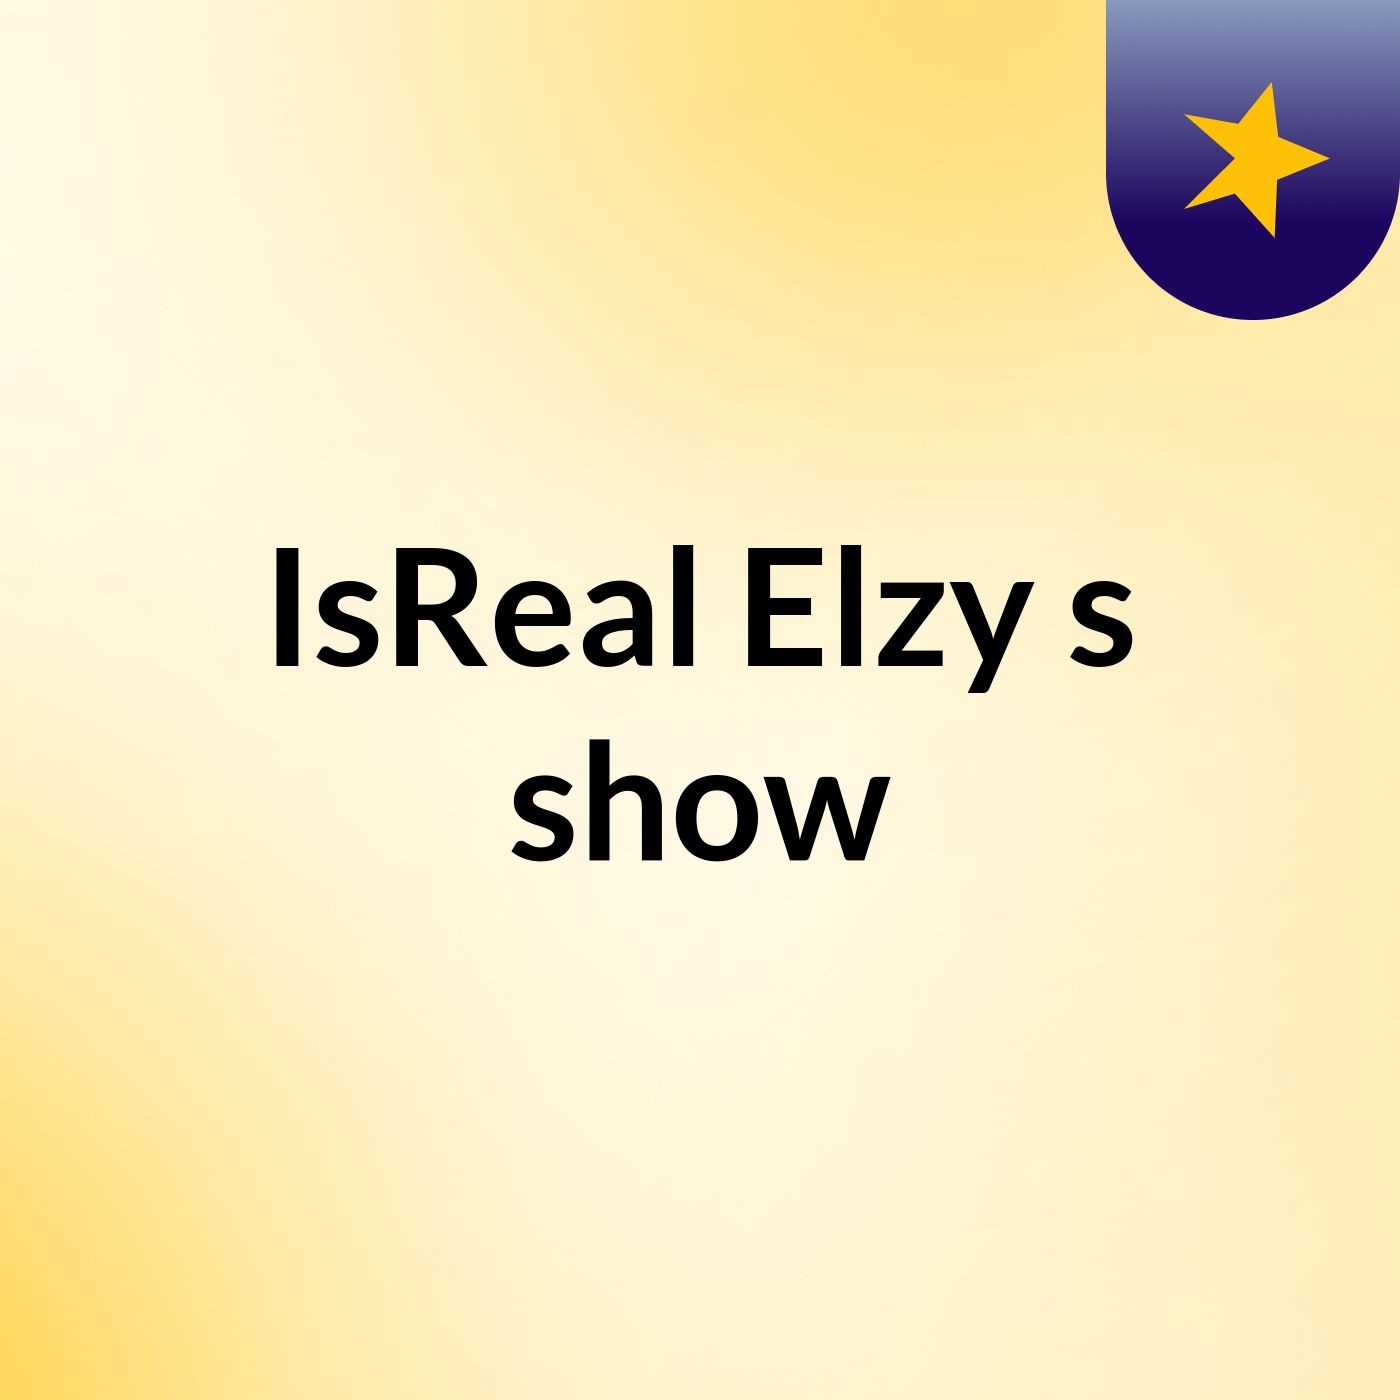 Episode 4 - IsReal Elzy's show